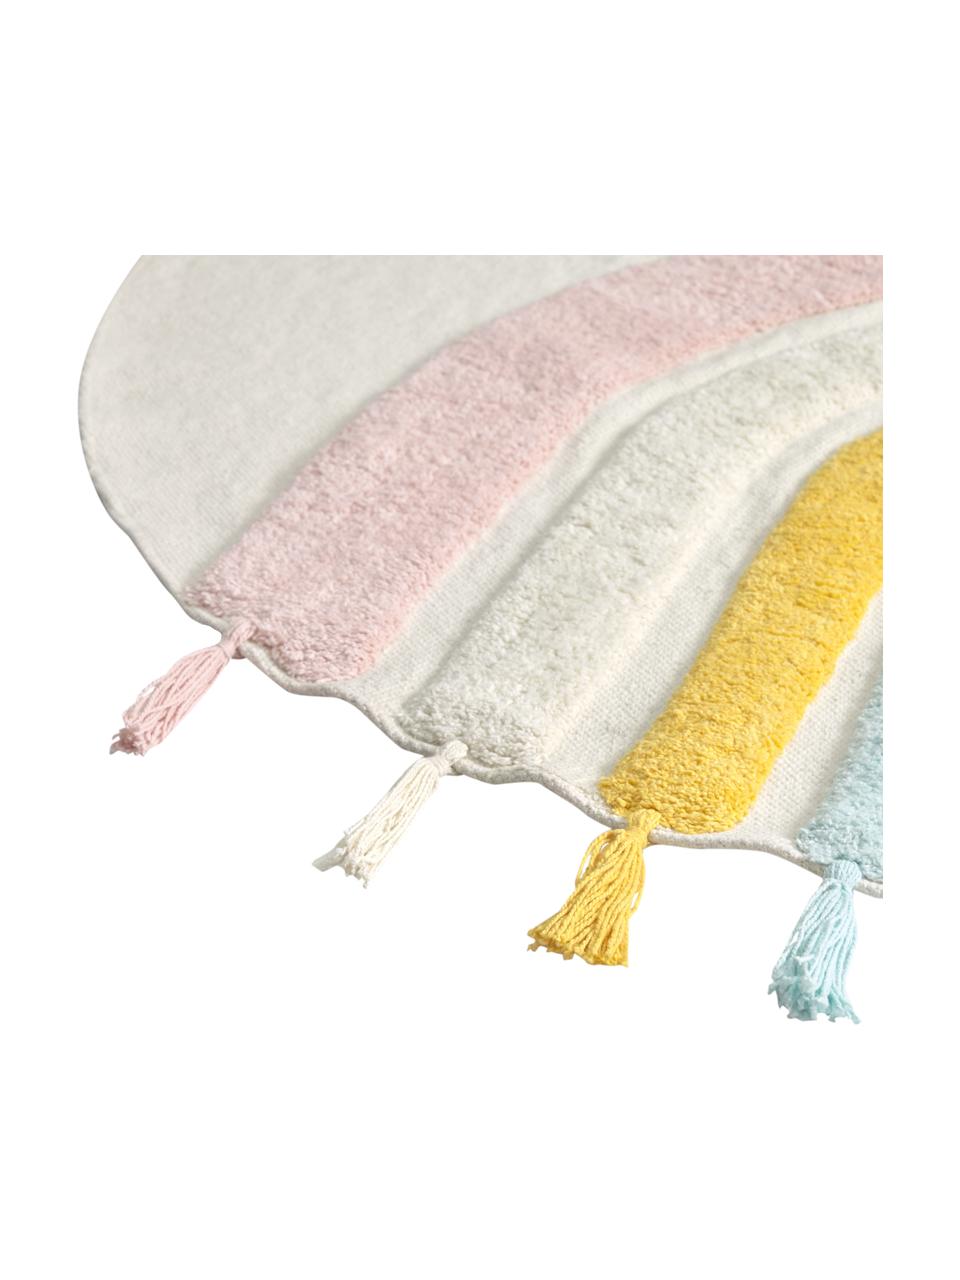 Teppich Thaide aus Bio-Baumwolle mit Quasten, 100% Bio-Baumwolle, GOTS-zertifiziert, Cremeweiß, Rosa, Weiß, Blau, Gelb, Ø 100 cm (Größe XS)